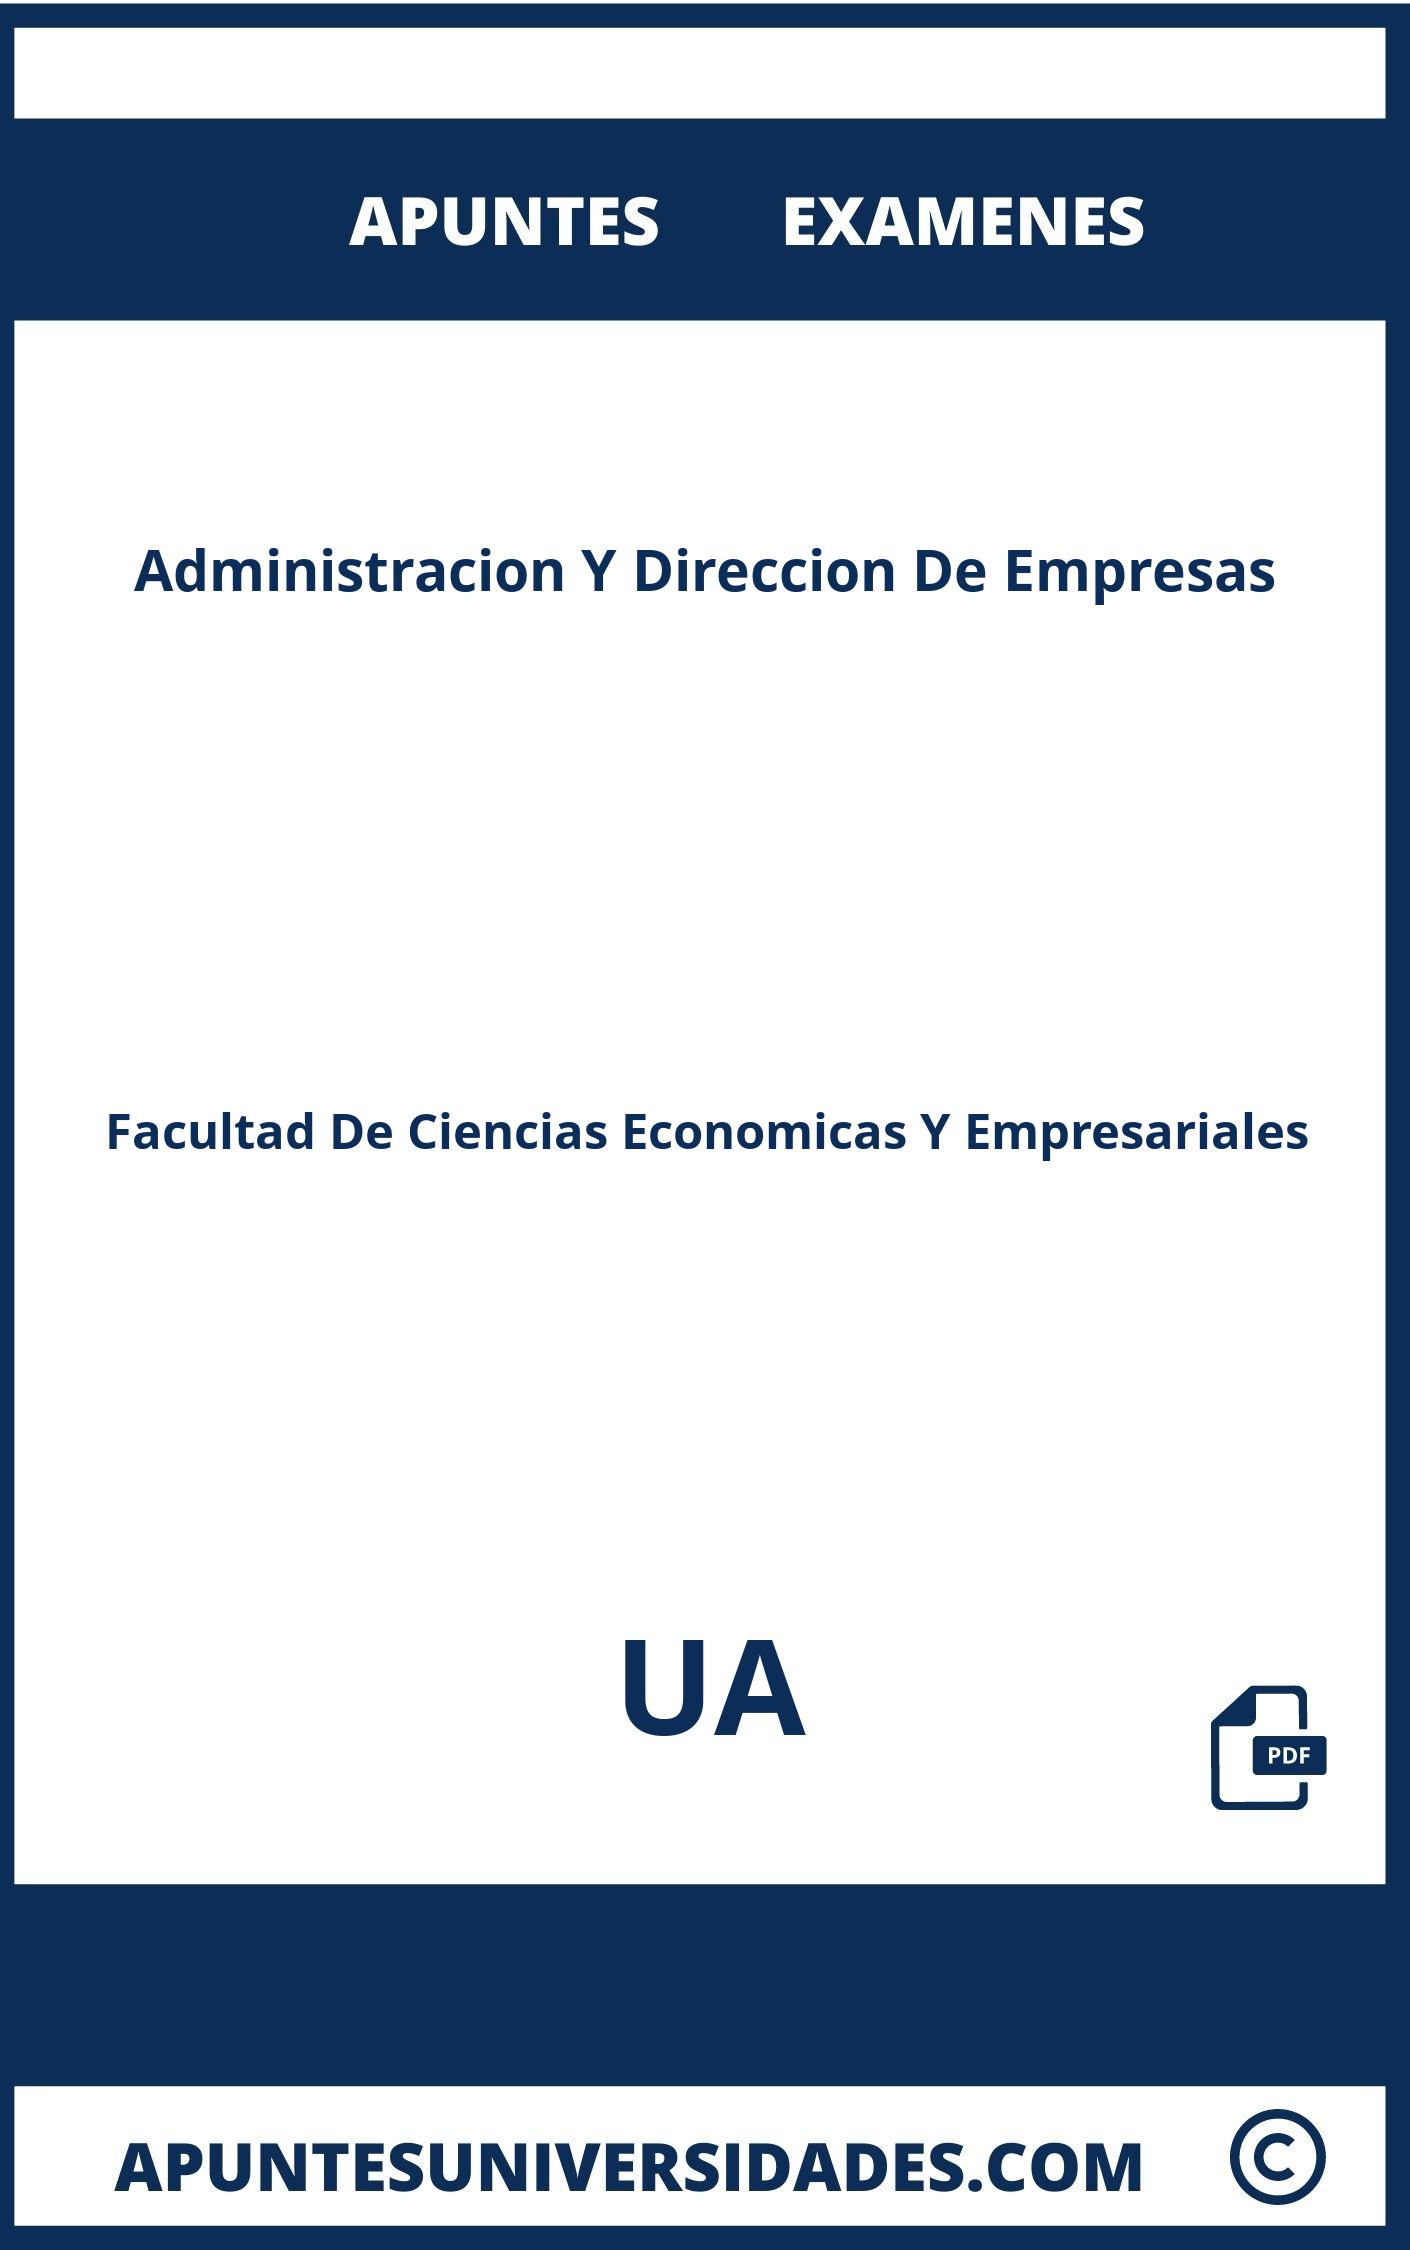 Examenes Apuntes Administracion Y Direccion De Empresas UA